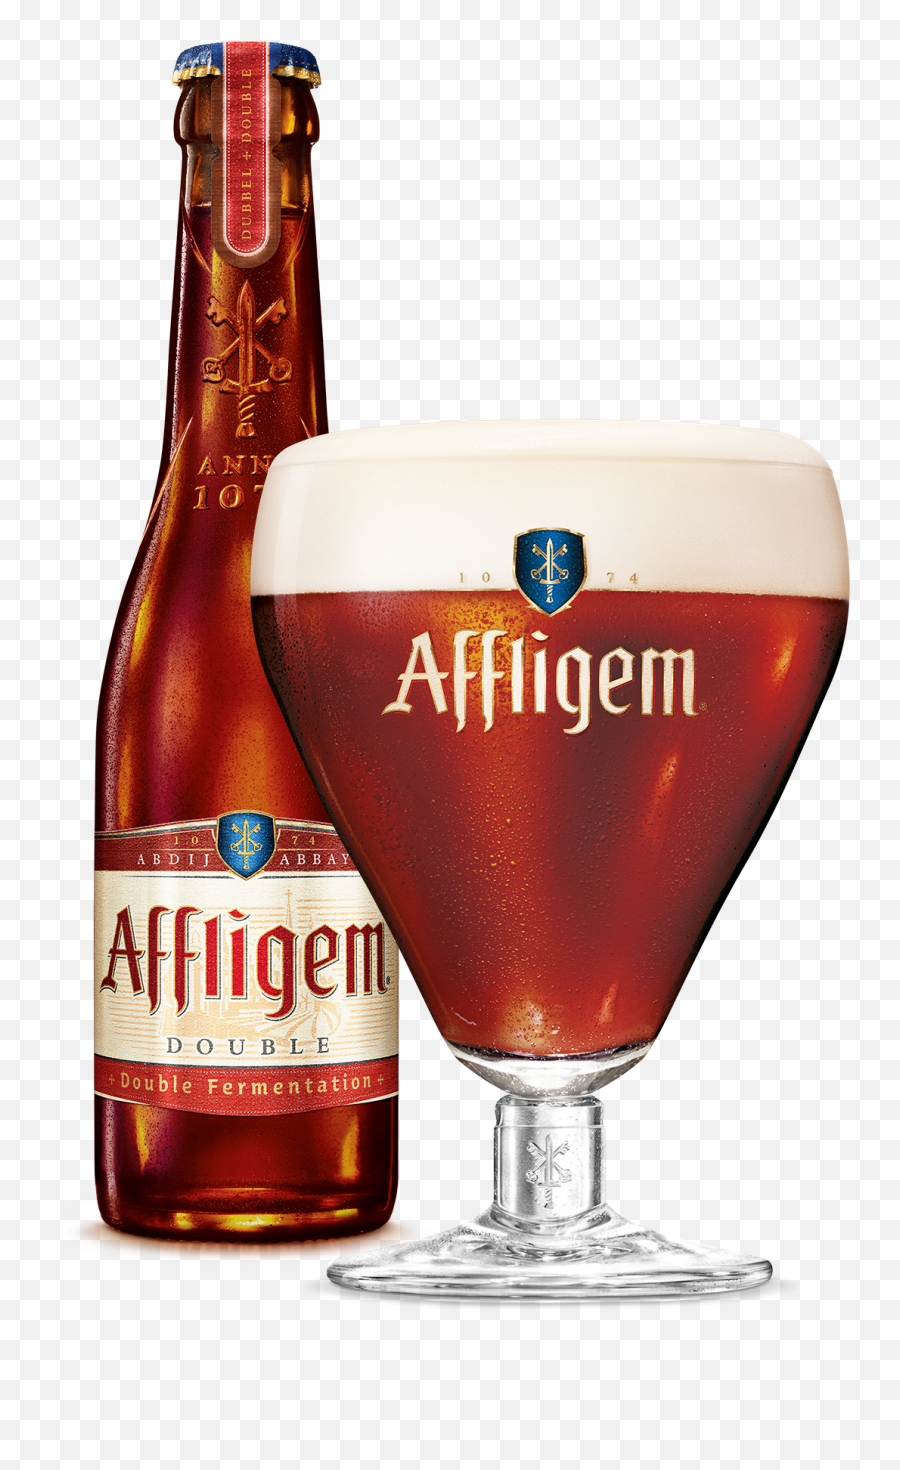 Fileaffligem Doublepng - Wikimedia Commons Affligem Dubbel,Beer Bottles Png